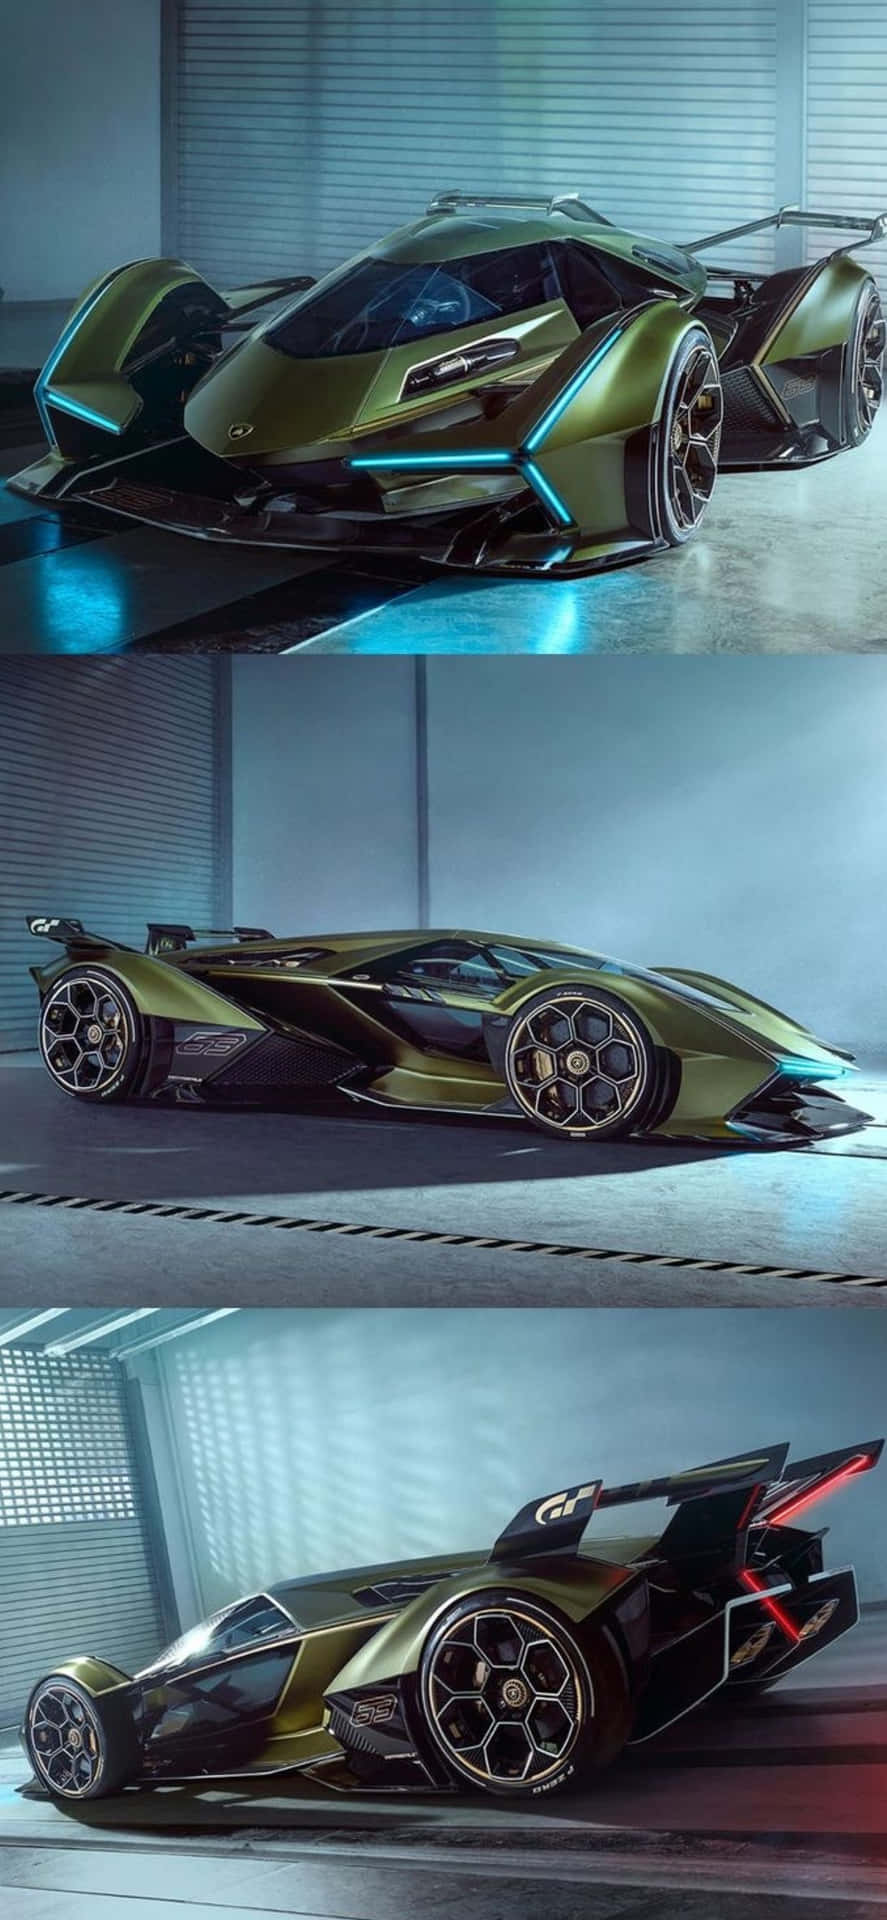 Iphonexs Max Lamborghini V12 Vision Gt Bakgrundsbild.